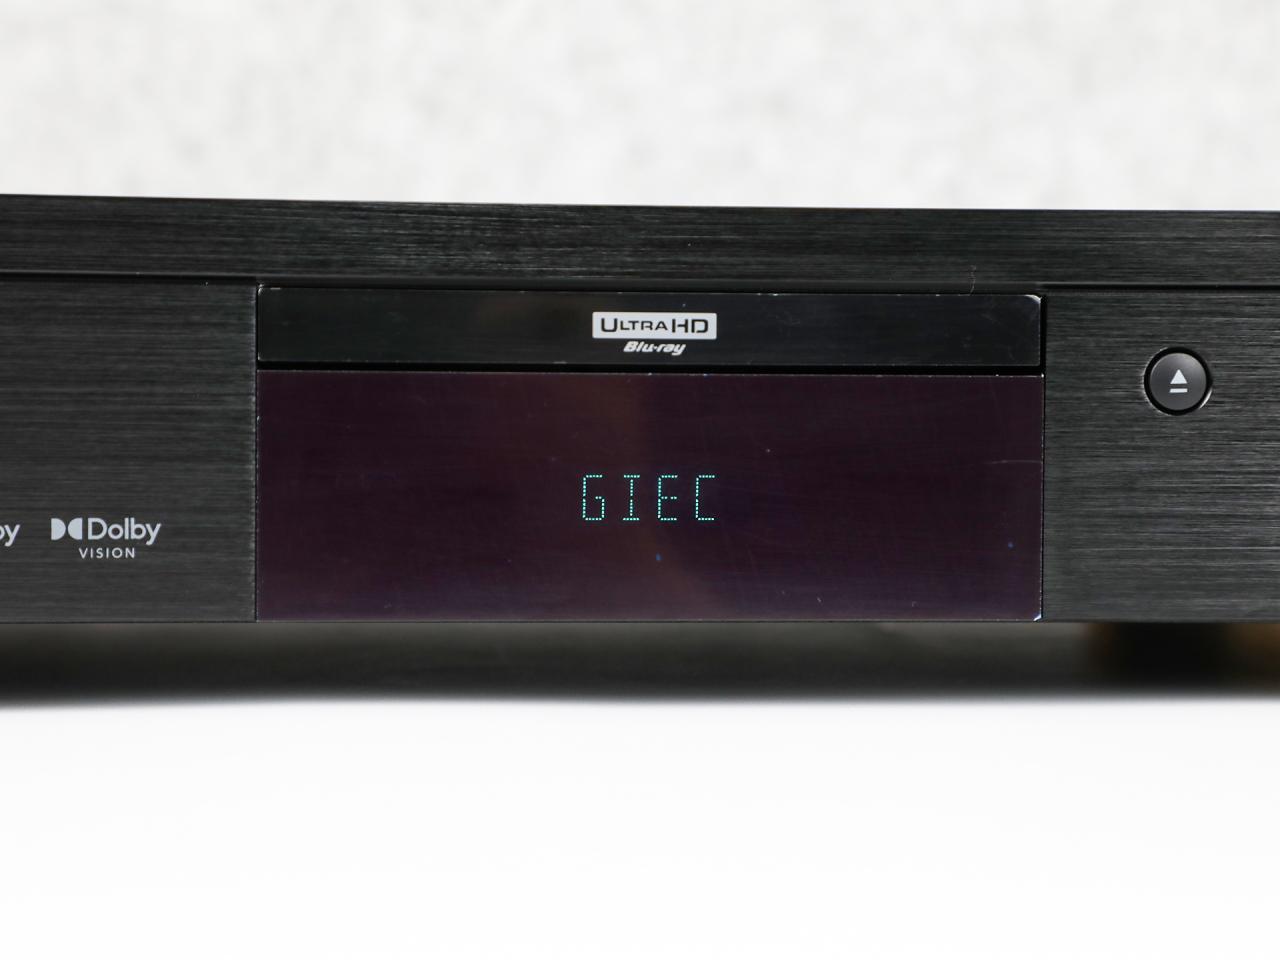 支持杜比视界、HDR 杰科GIEC BDP-G5700真4K蓝光播放机赏析